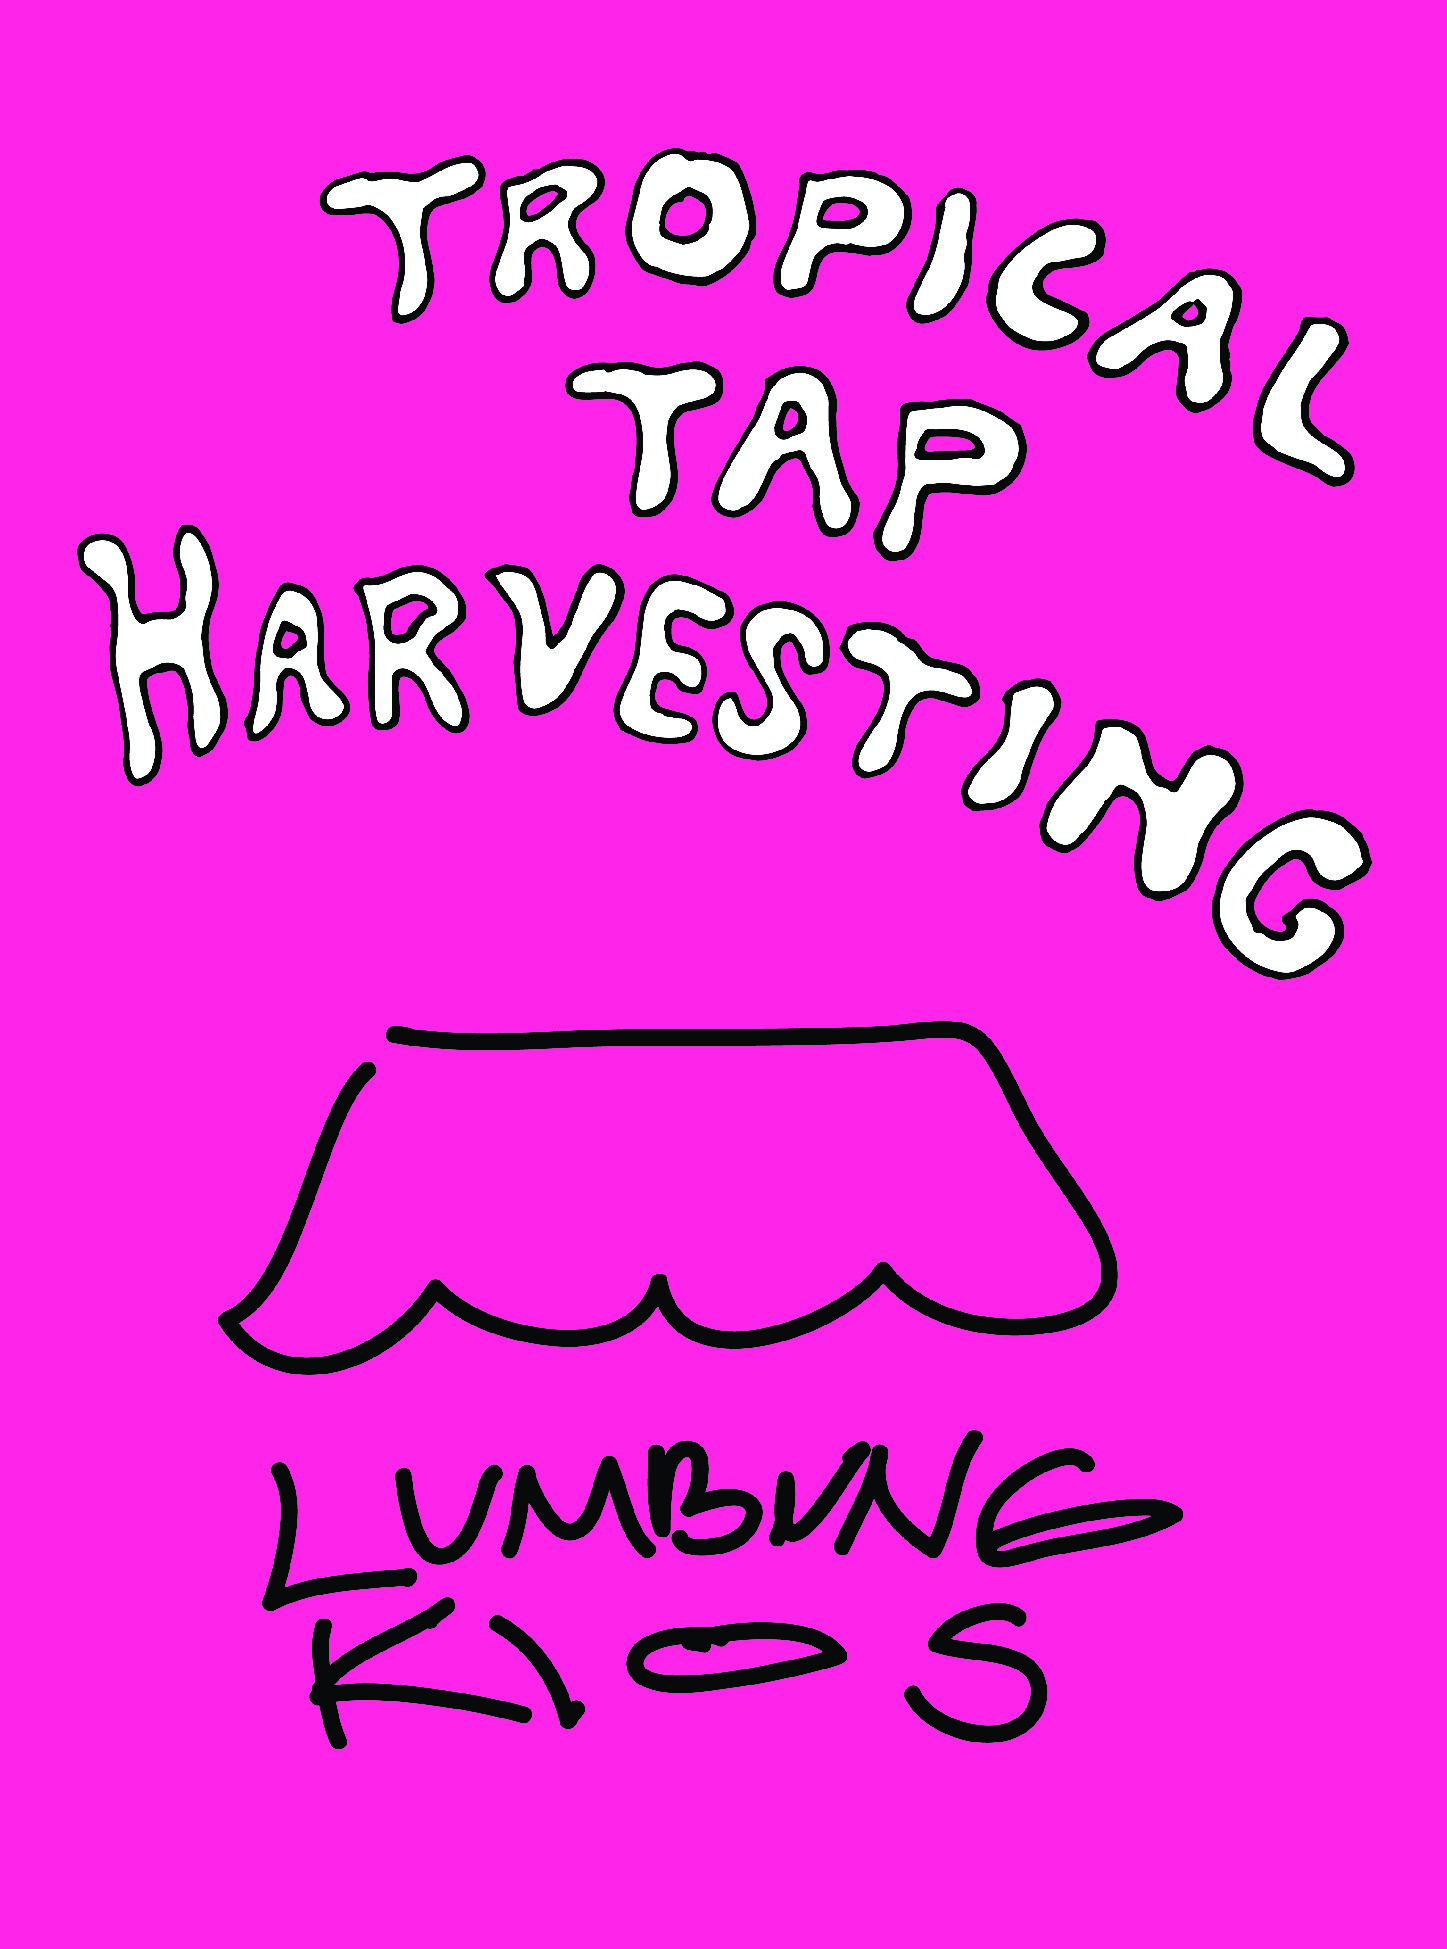 Tropical Tap Harvesting - Lumbung Kios